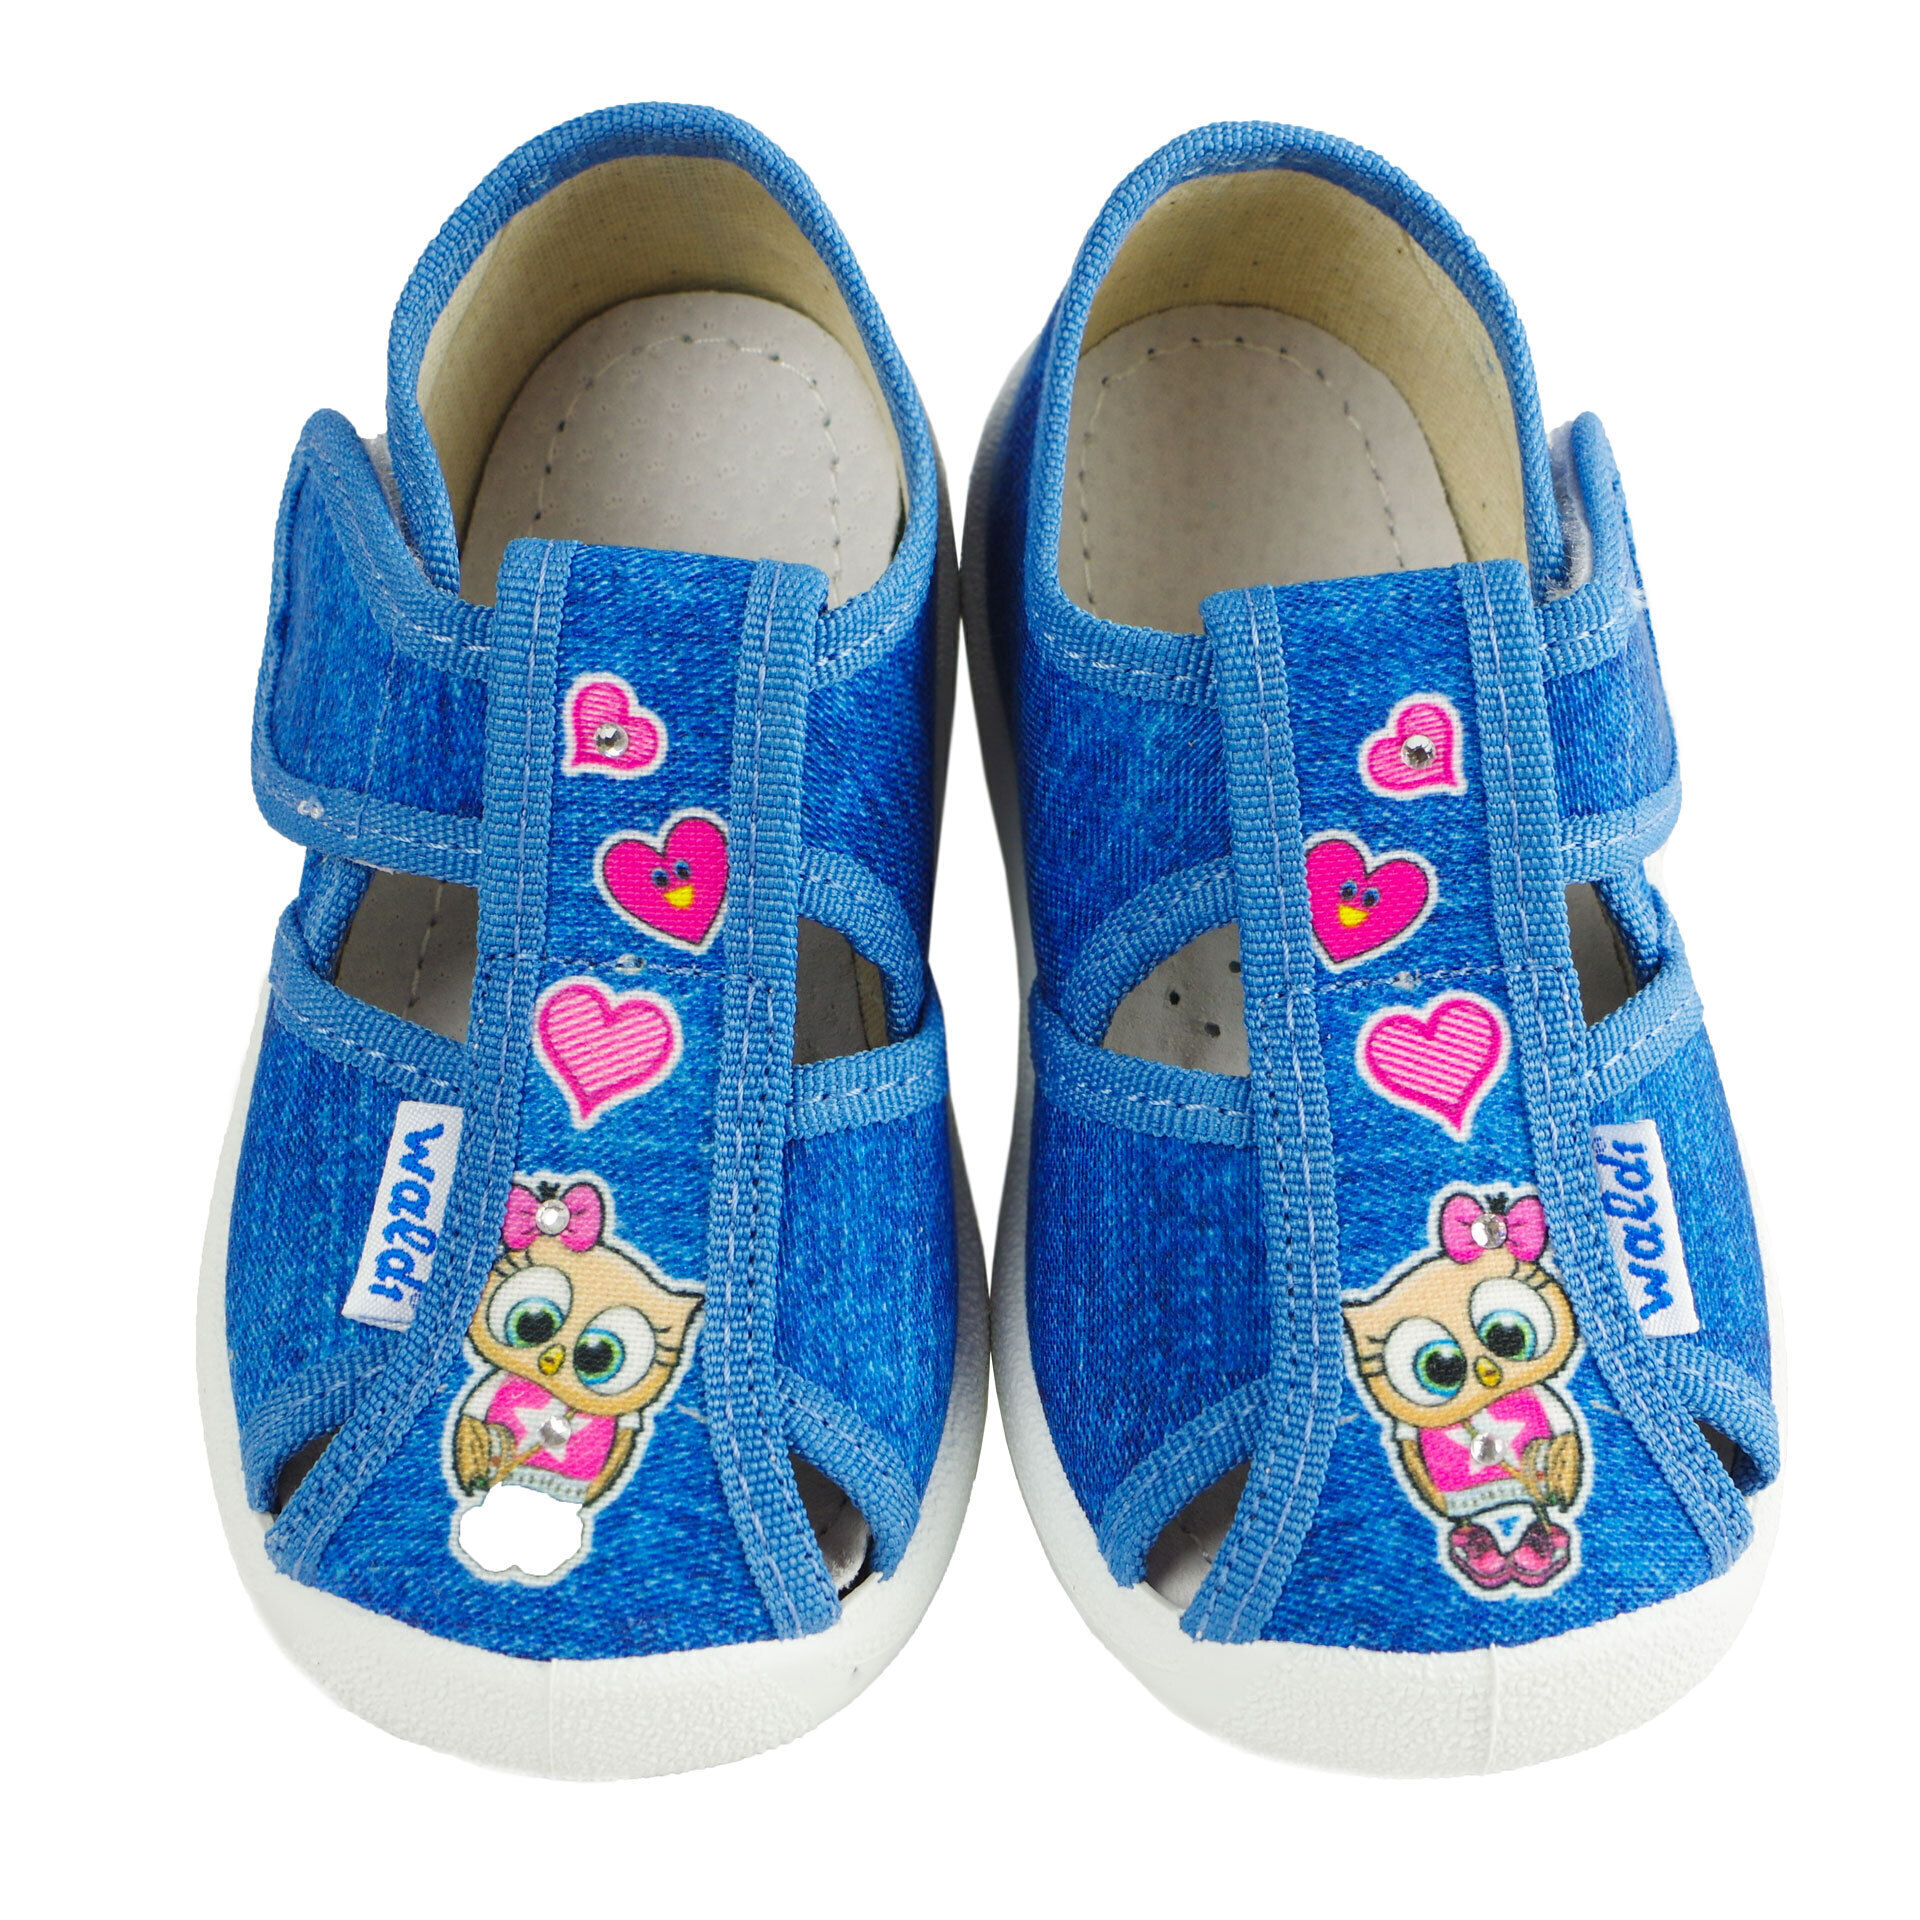 Текстильная обувь для девочек Тапочки Сова (2043) цвет Розовый 21-27 размеры – Sole Kids. Фото 3